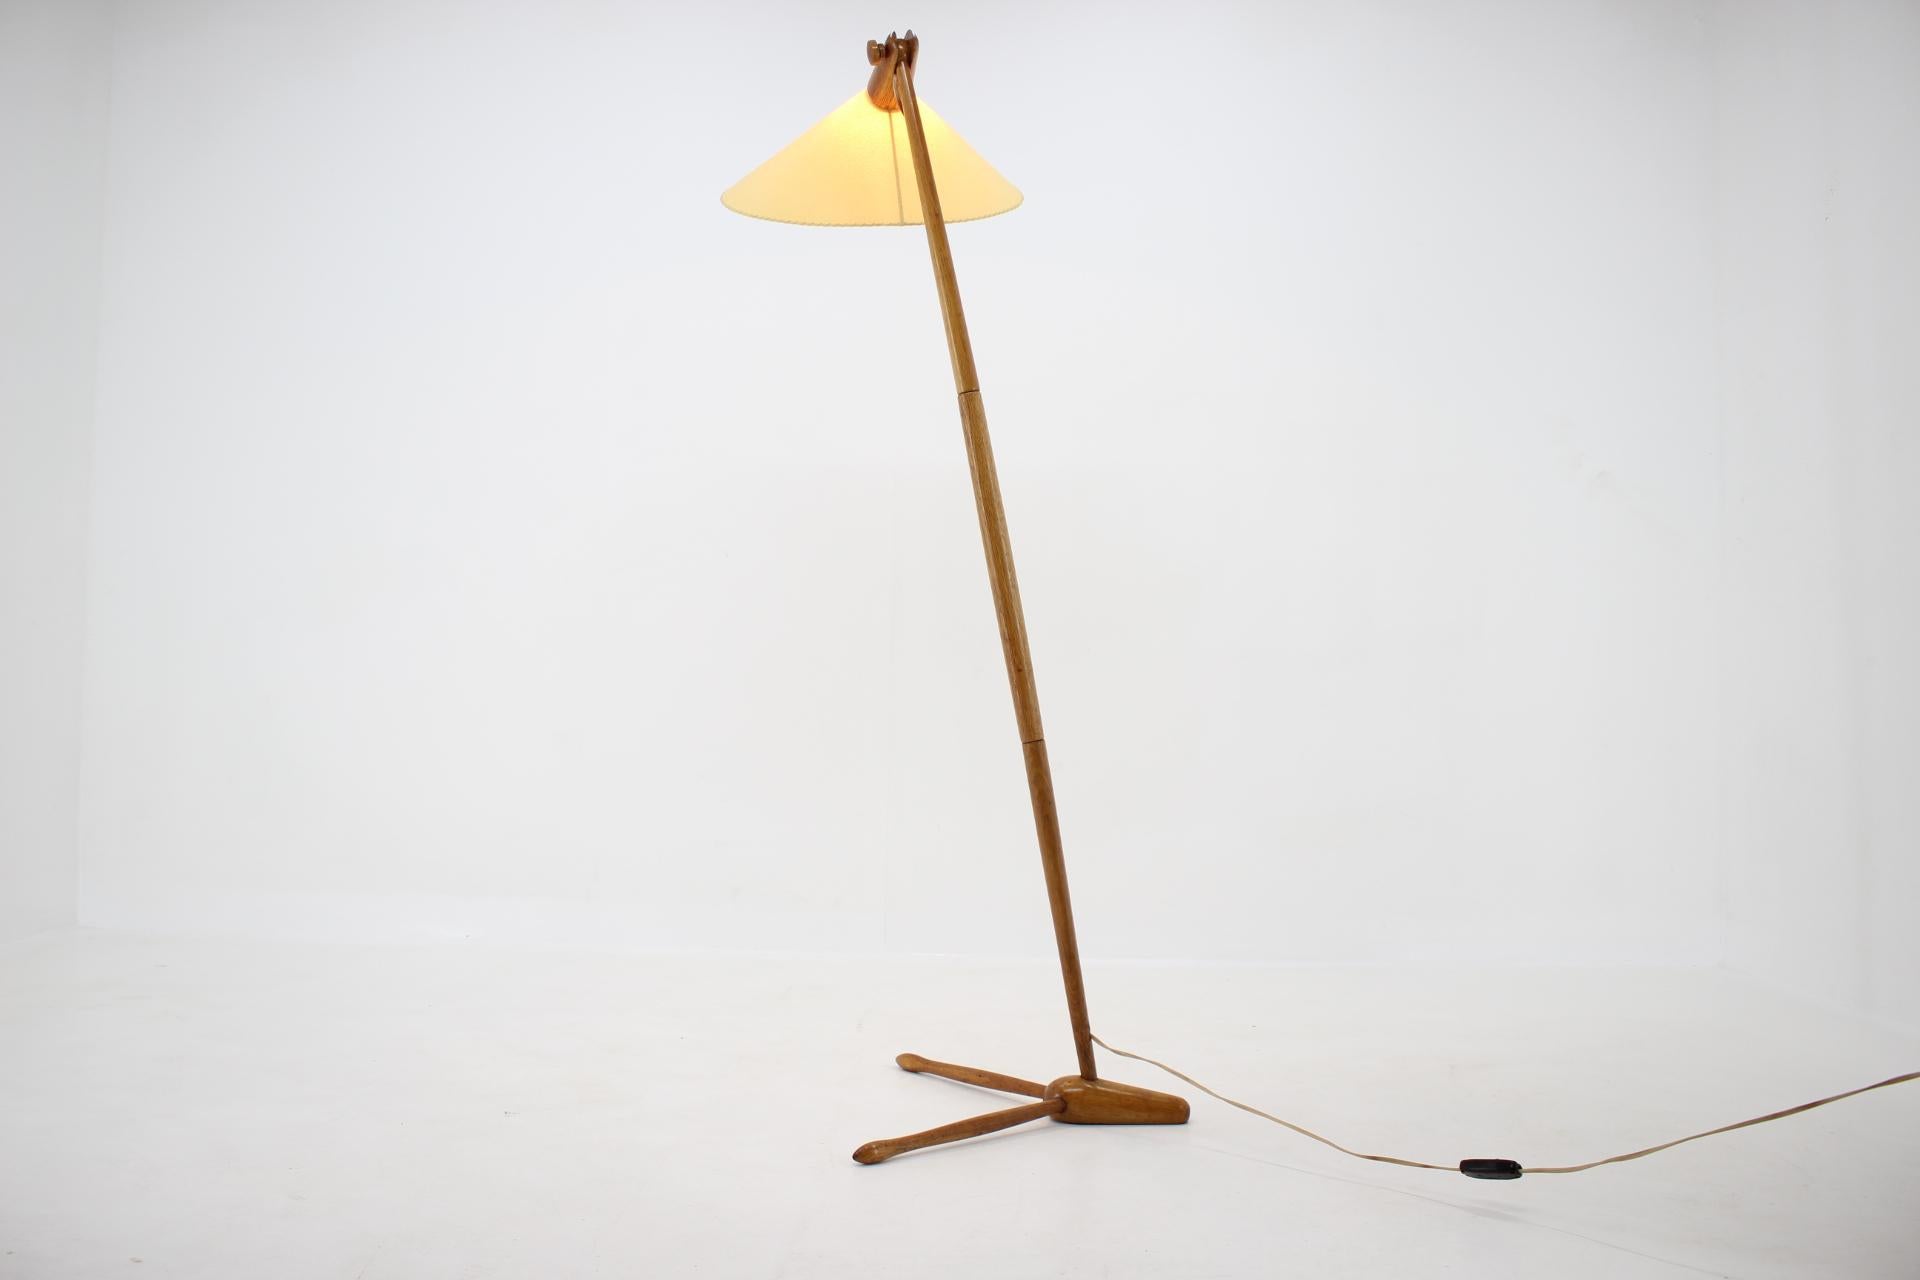 Czech Midcentury Adjustable Wooden Floor Lamp by ULUV / 1950s, Restored